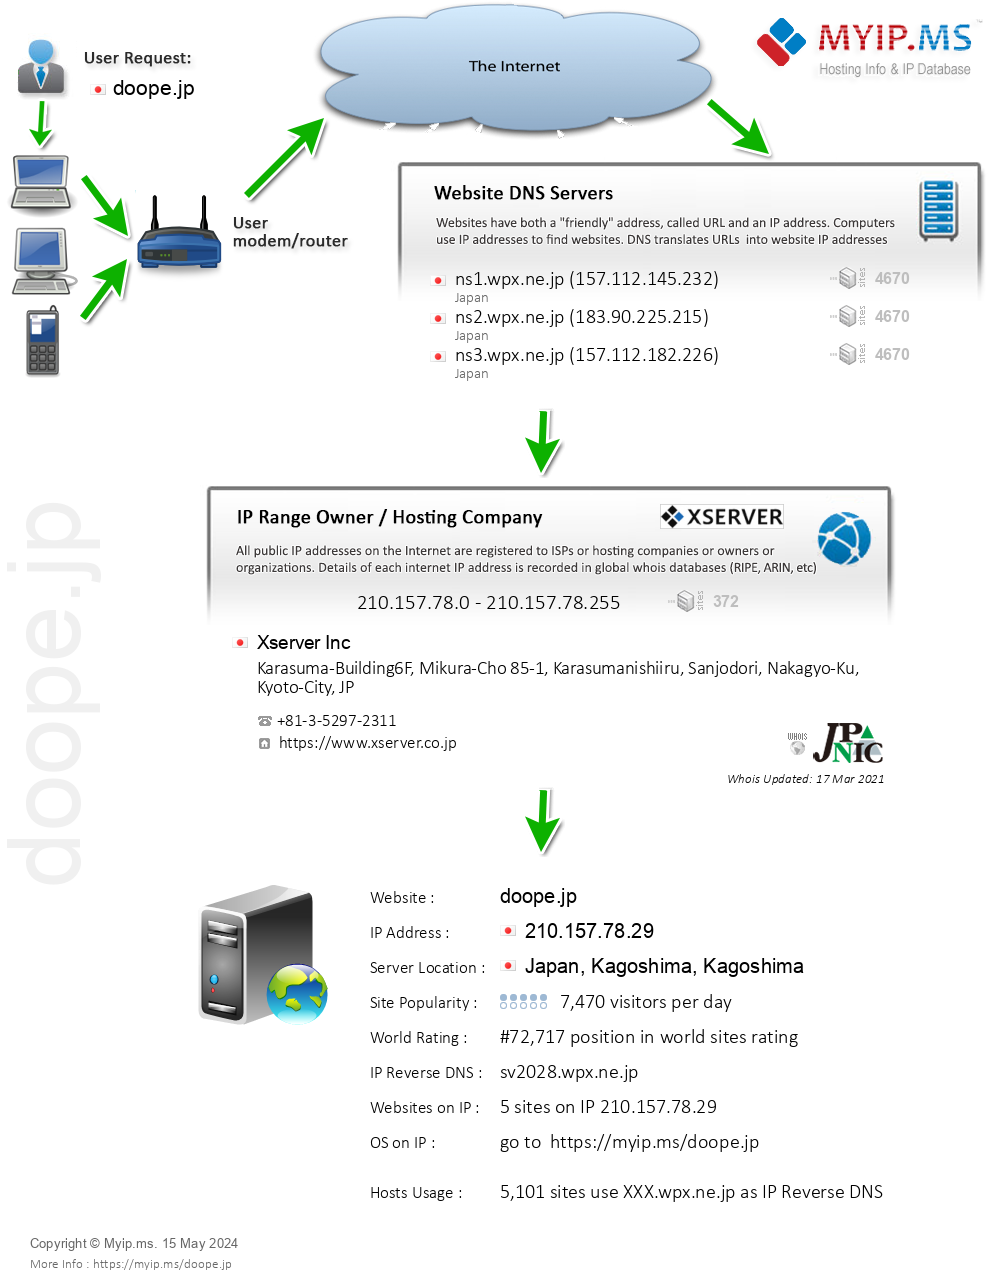 Doope.jp - Website Hosting Visual IP Diagram